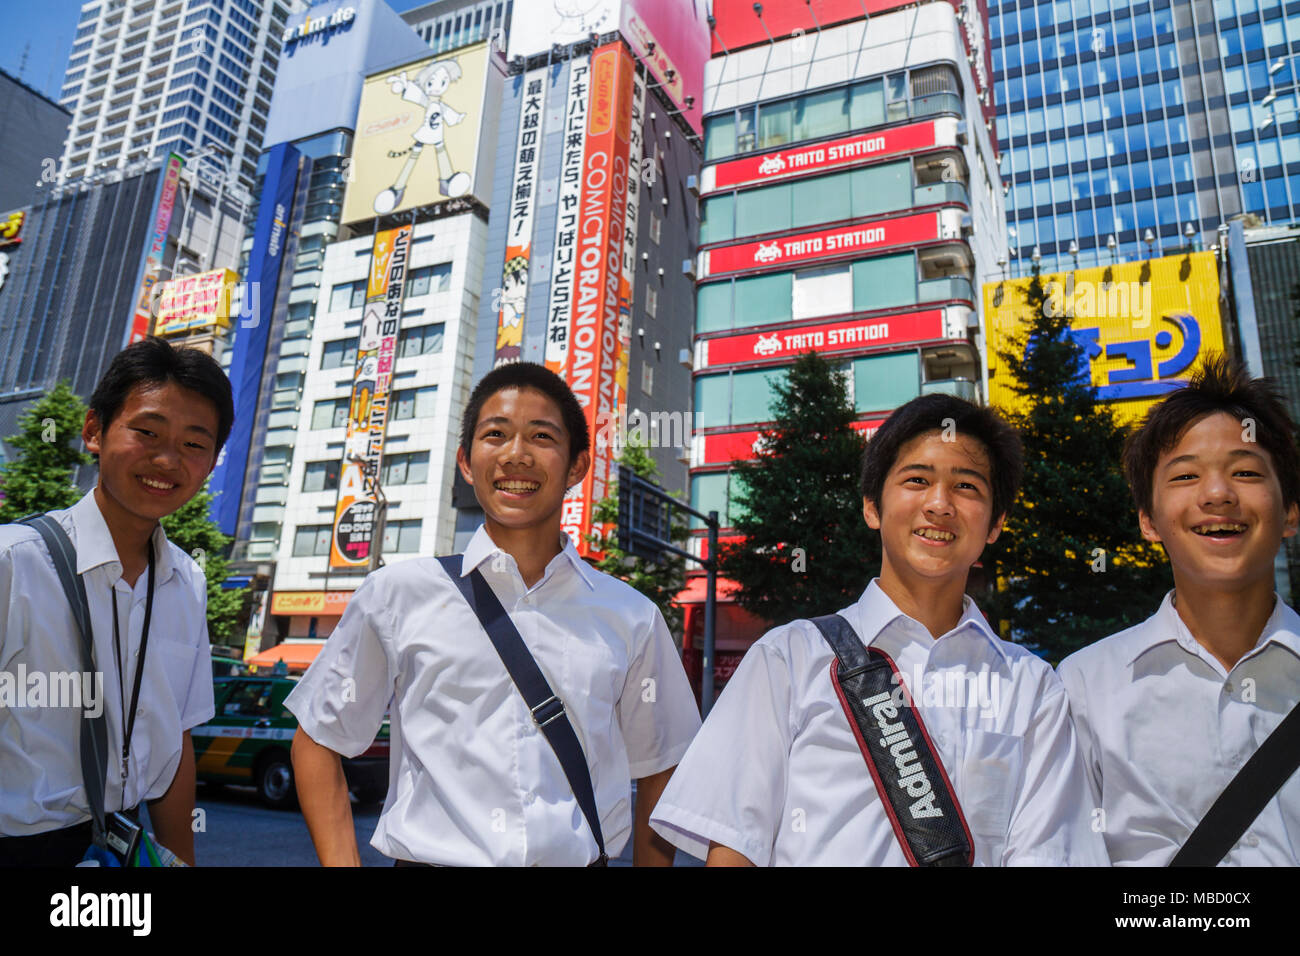 Tokio Japan, Akihabara, Electric Town, Chuo Dori Street, Kanji, Japanisches Englisch, Asiatisch-Orientalisch, Teenager Teenager Jugendliche Erwachsene, Jungen Jungen, männliche Kinder Stockfoto